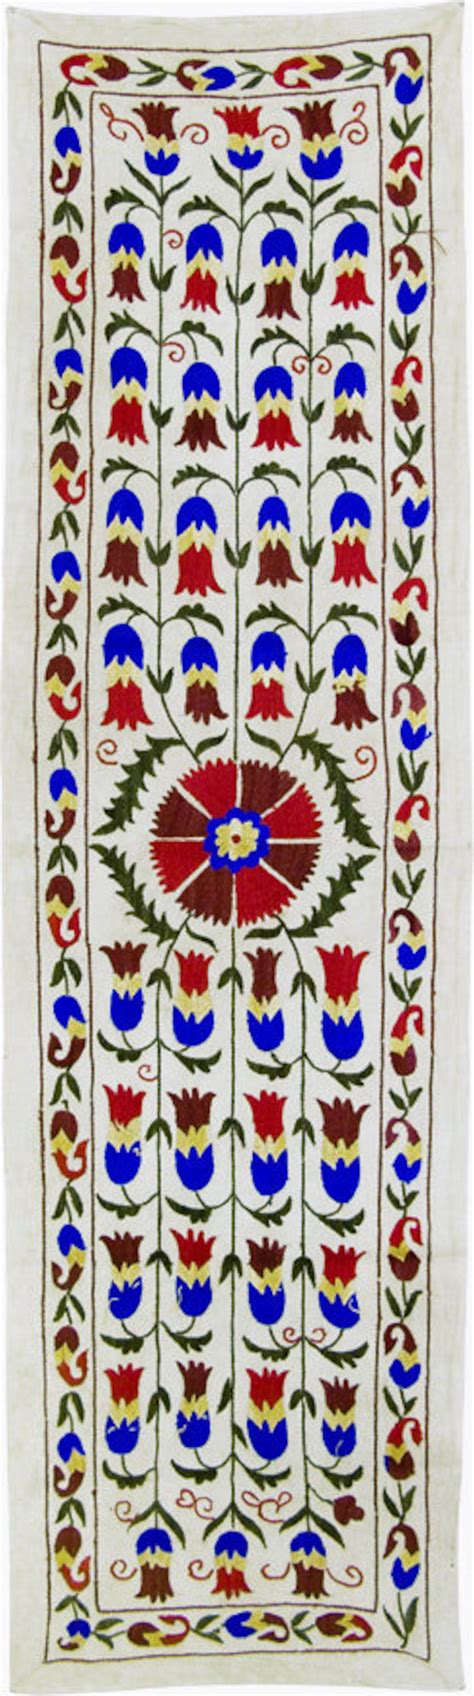 Amazing Antique Design Handmade Suzani Textile From Uzbekistan Etsy